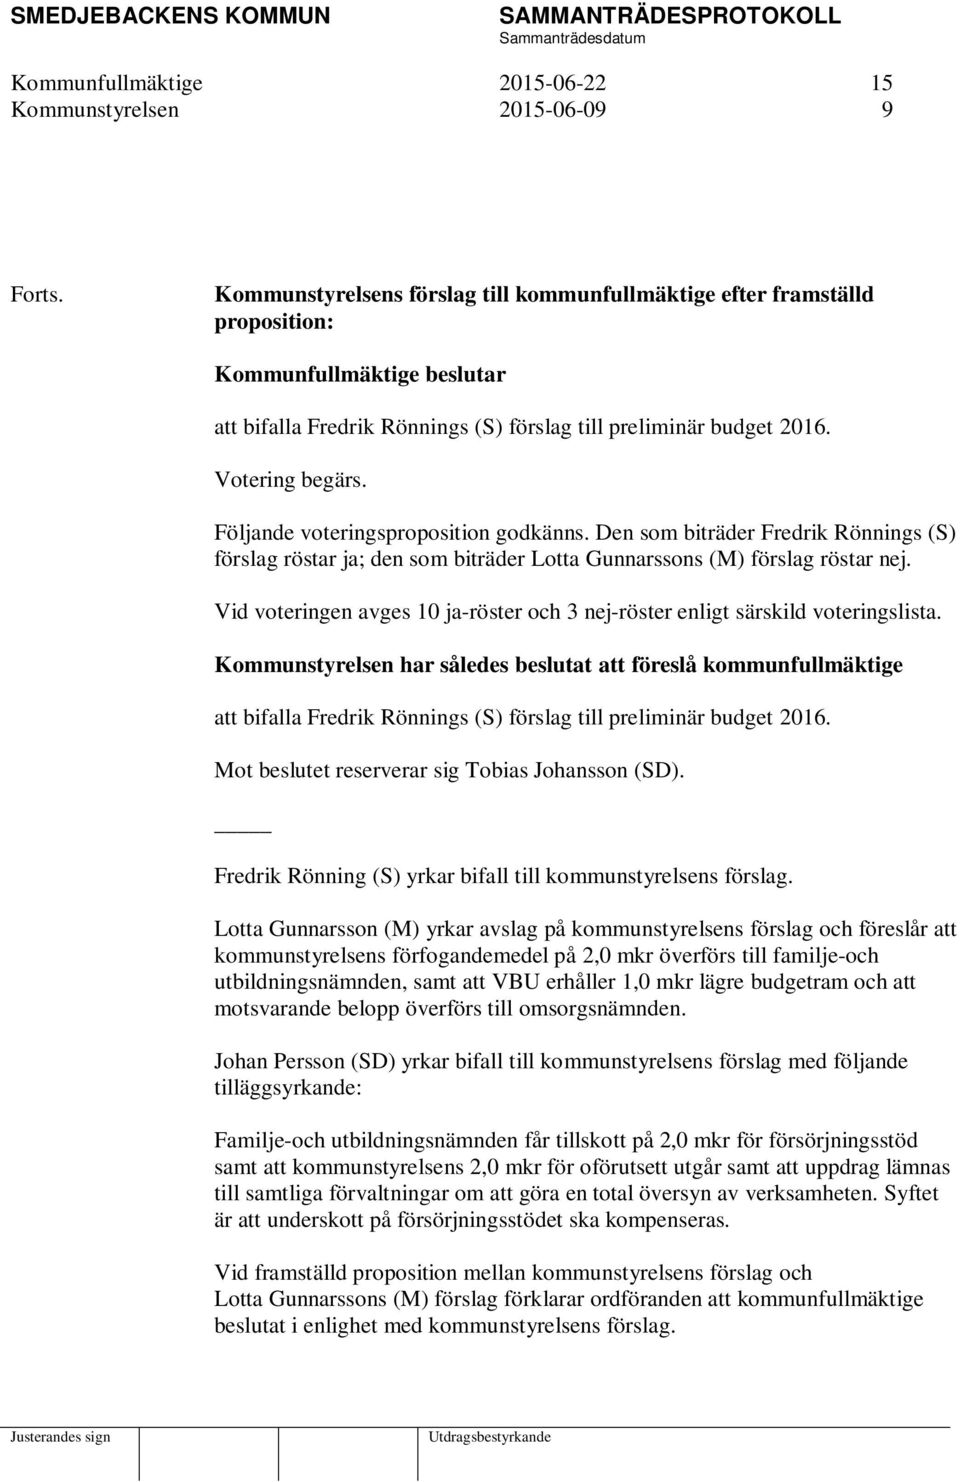 Följande voteringsproposition godkänns. Den som biträder Fredrik Rönnings (S) förslag röstar ja; den som biträder Lotta Gunnarssons (M) förslag röstar nej.